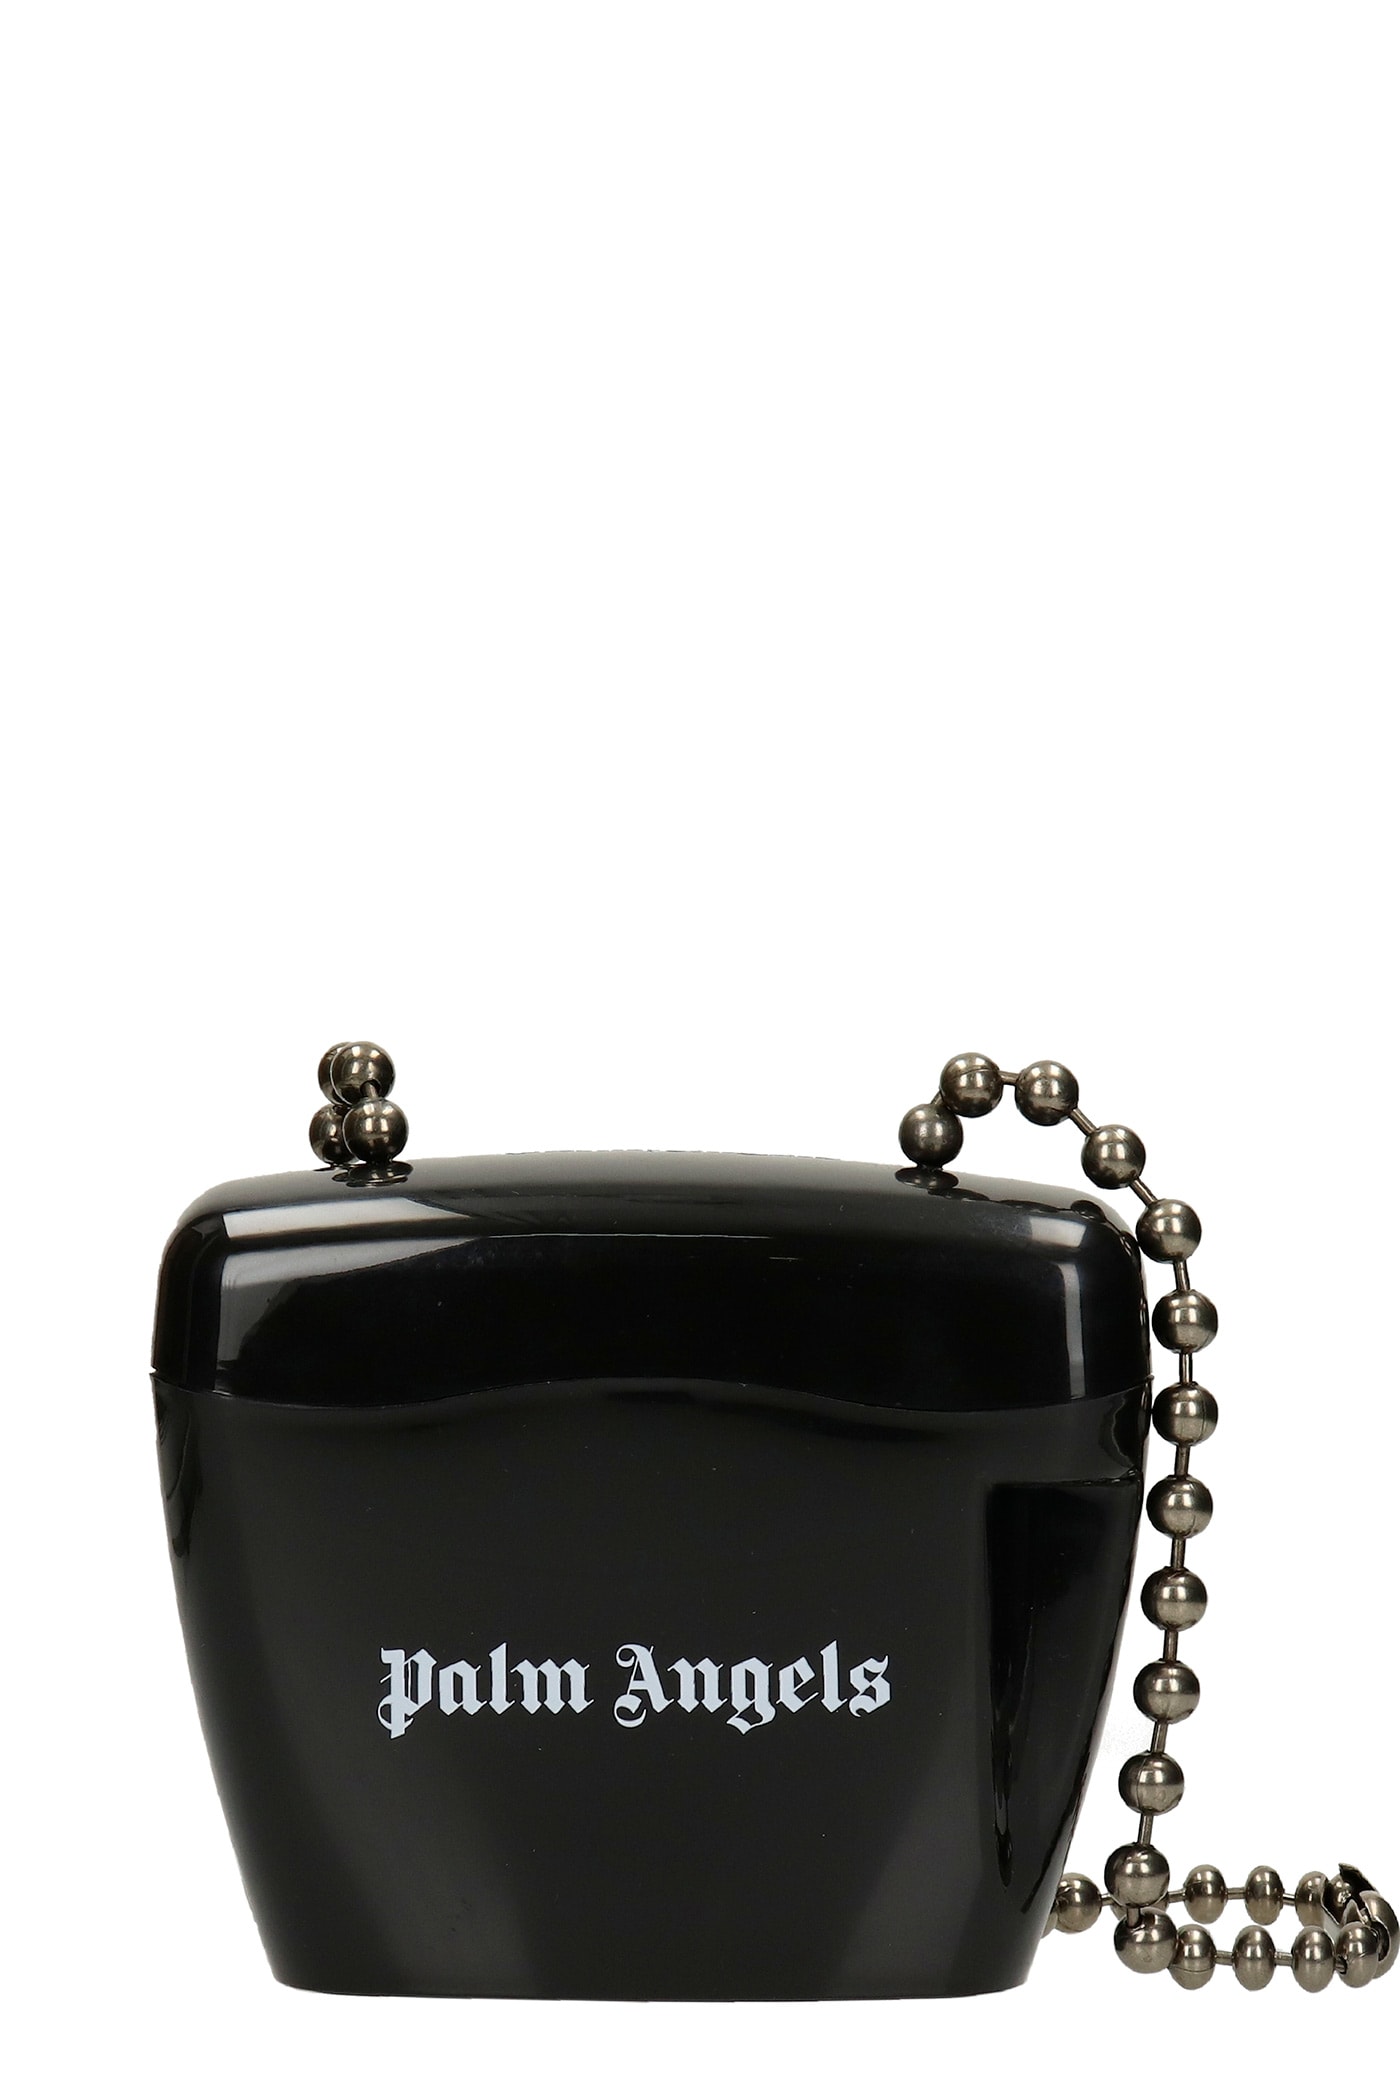 Palm Angels Shoulder Bag In Black Polypropylene